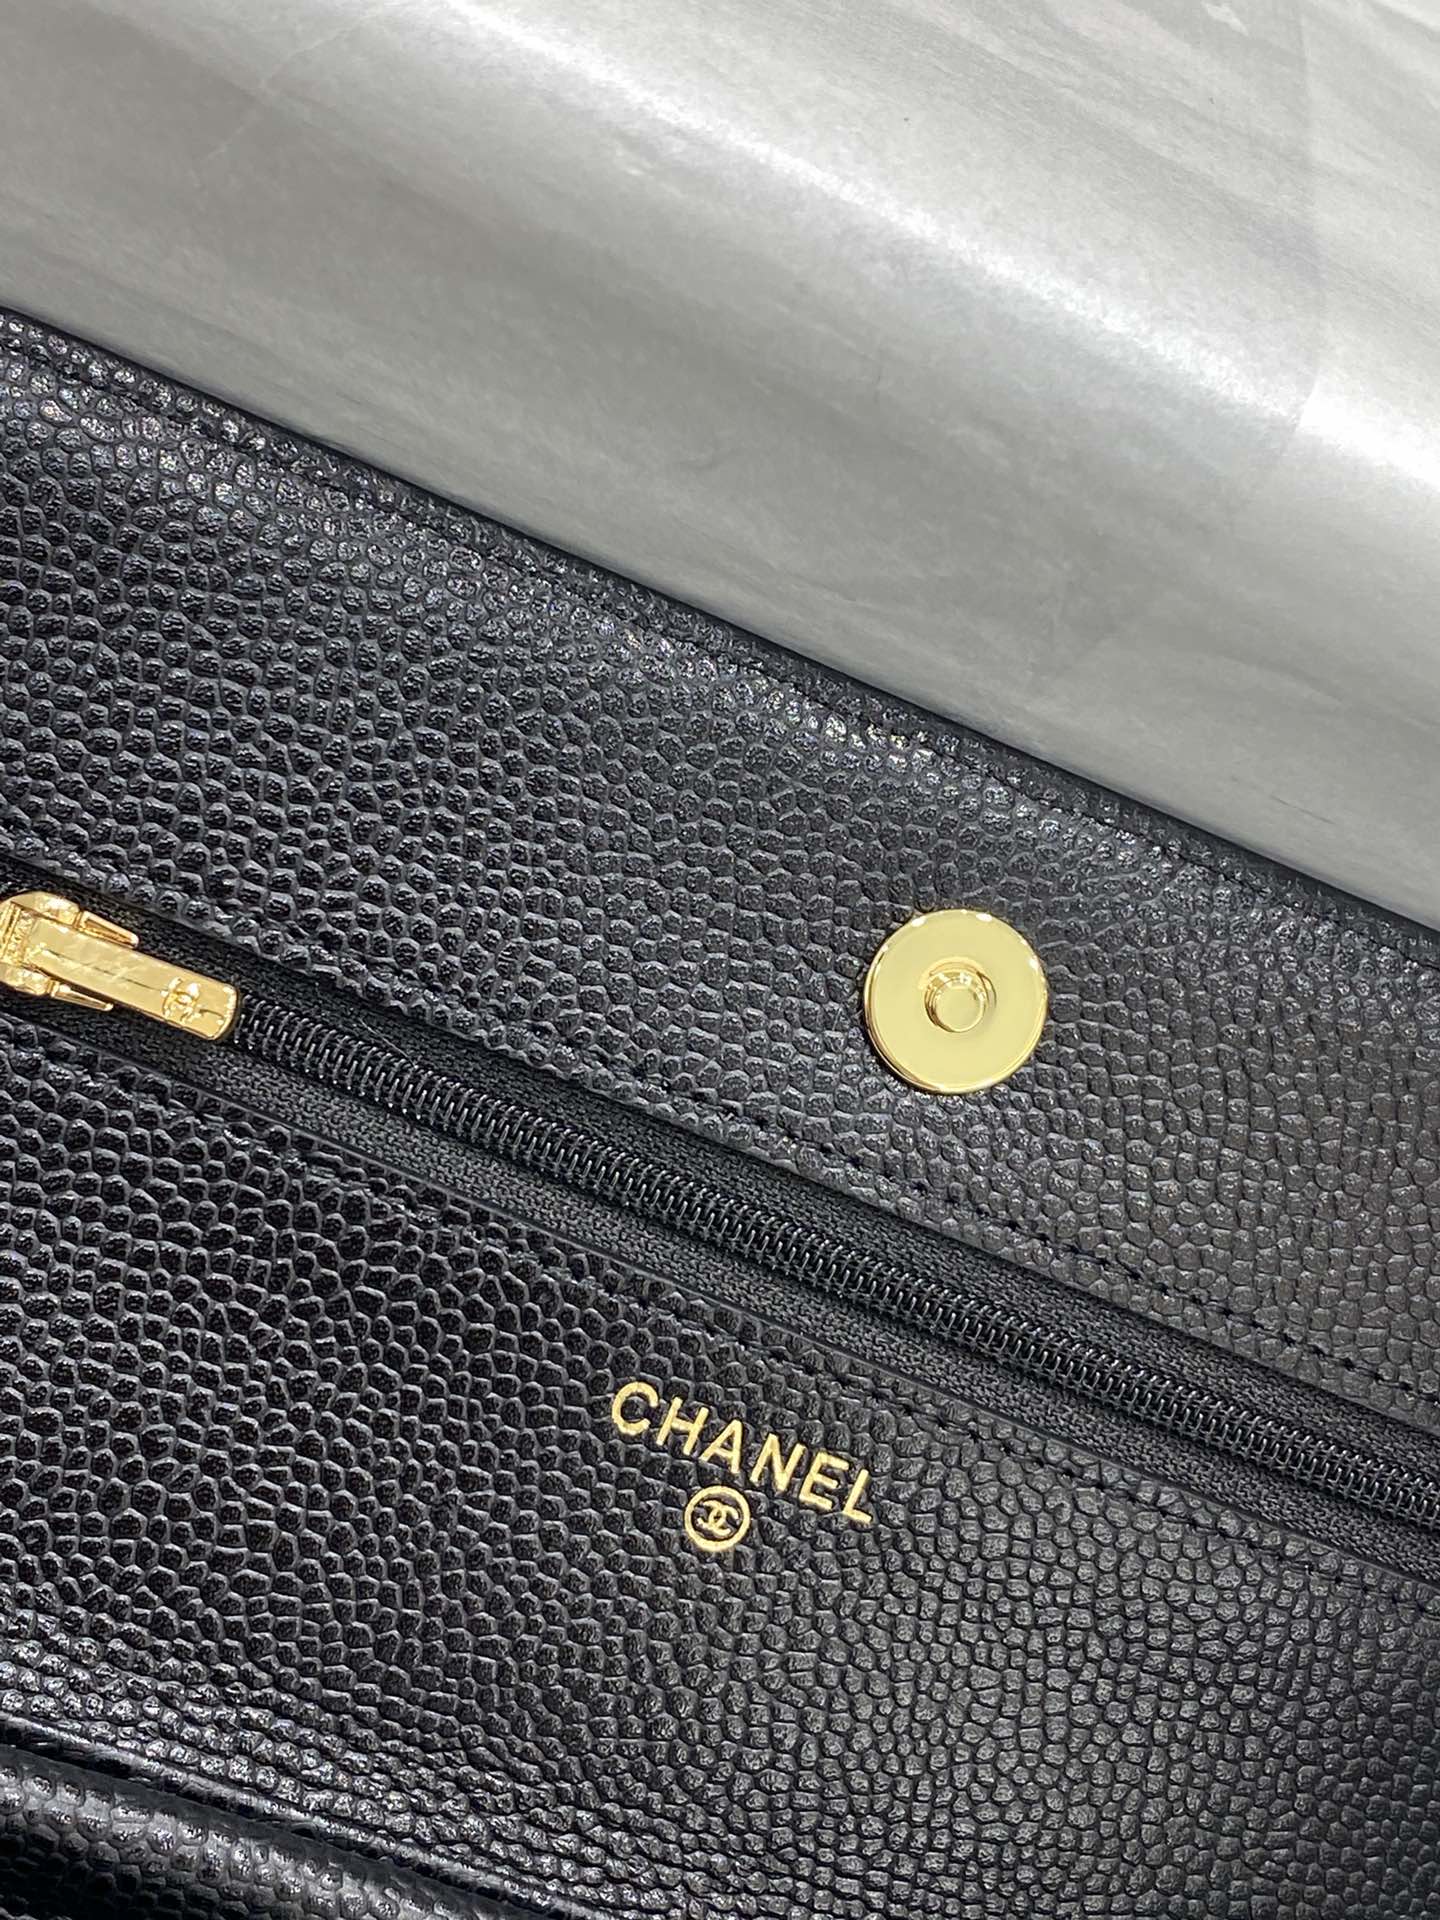 【吸扣版】19新款升级版Chanel woc链条包 顶级皮料五金 原单品质 19.5*12*3.5 克球金